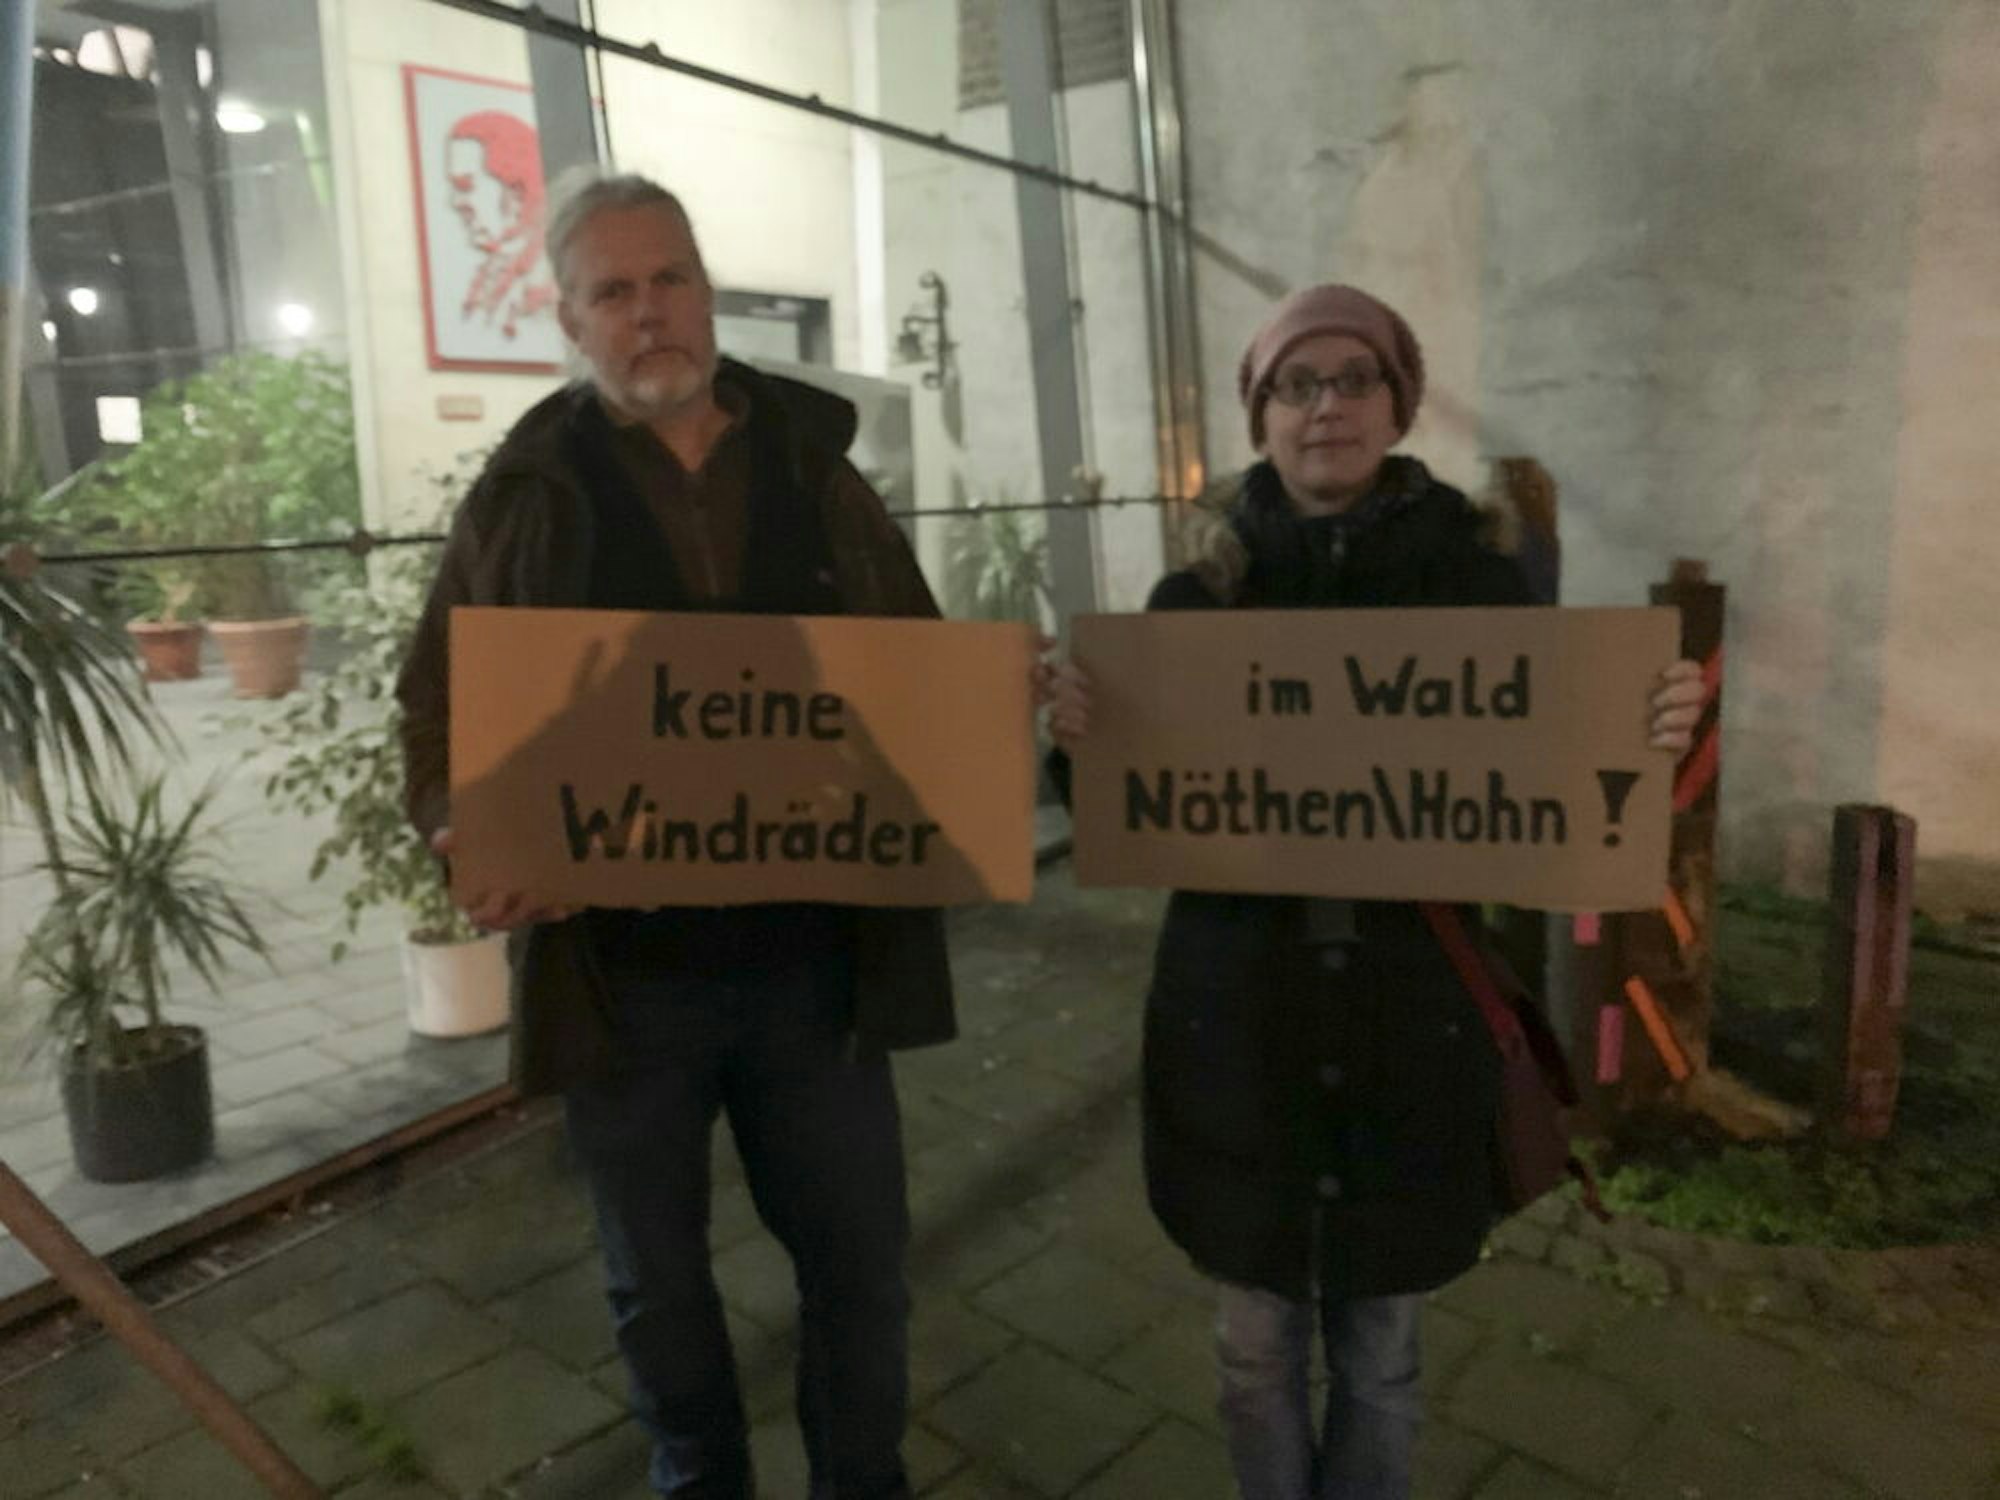 Bereits vor der Sitzung des Ausschusses demonstrierten Bürger gegen die Windräder im Wald von Nöthen und Hohn.